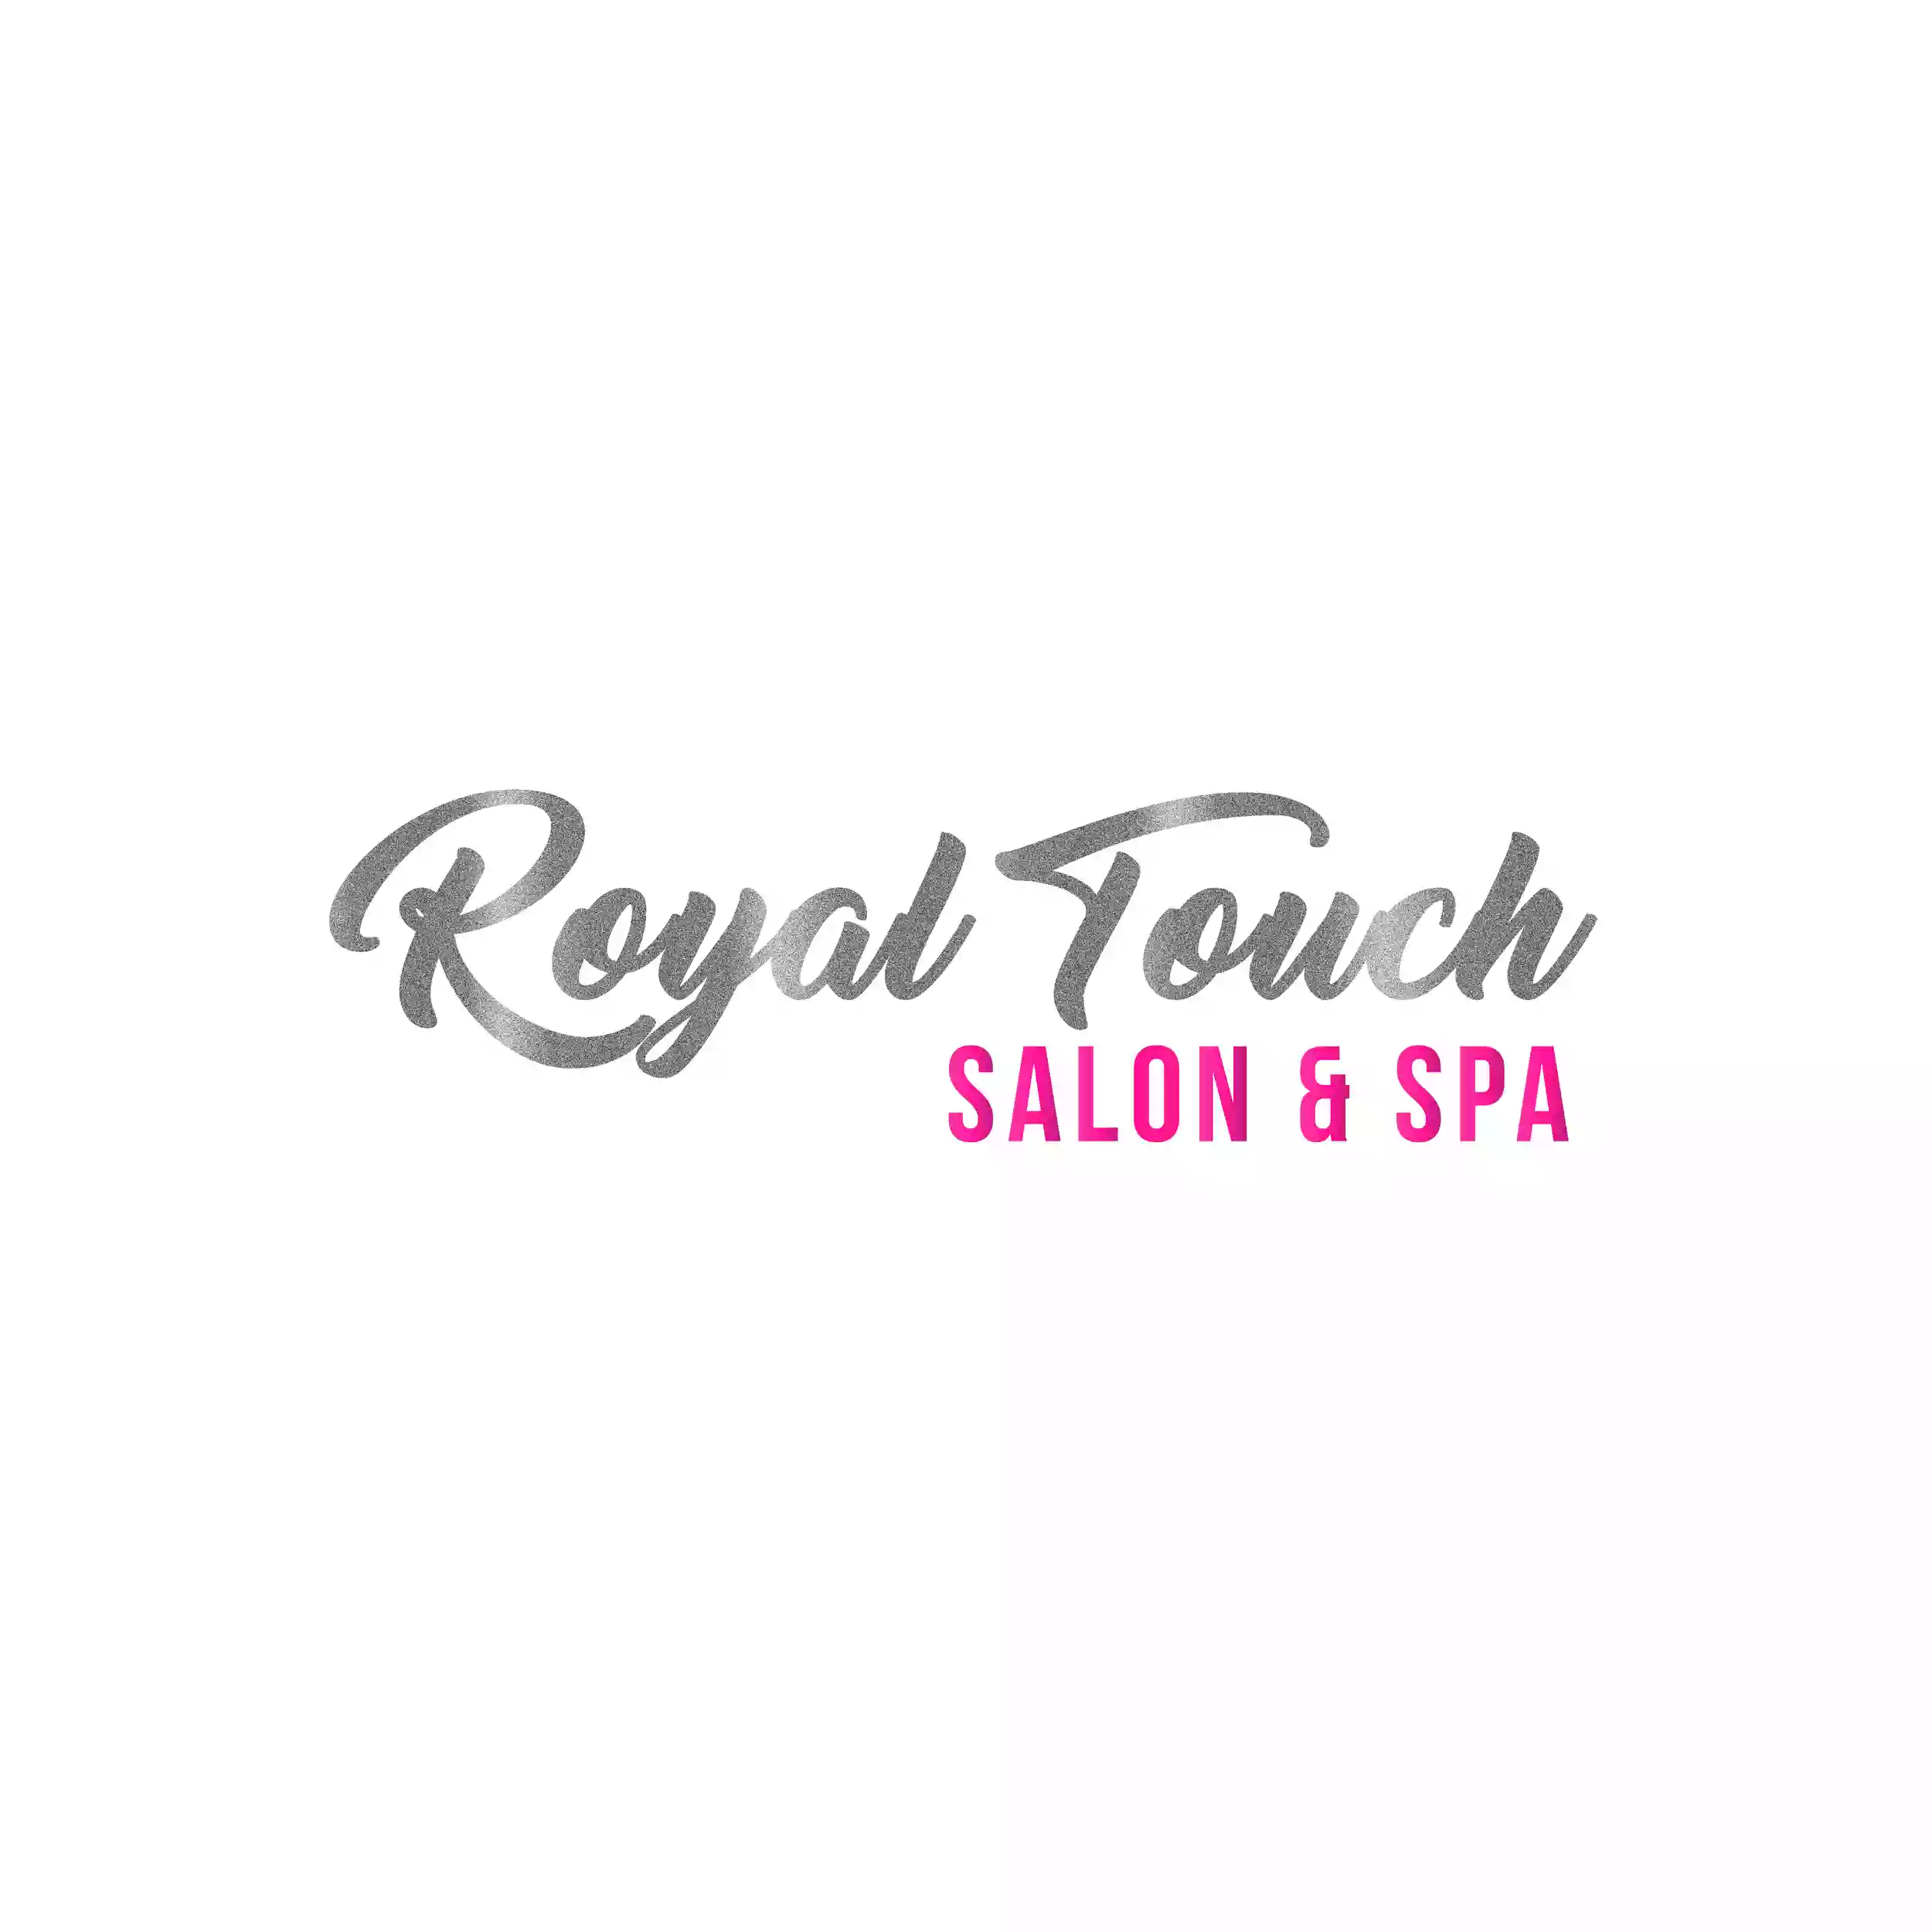 Royal Touch Salon & Spa